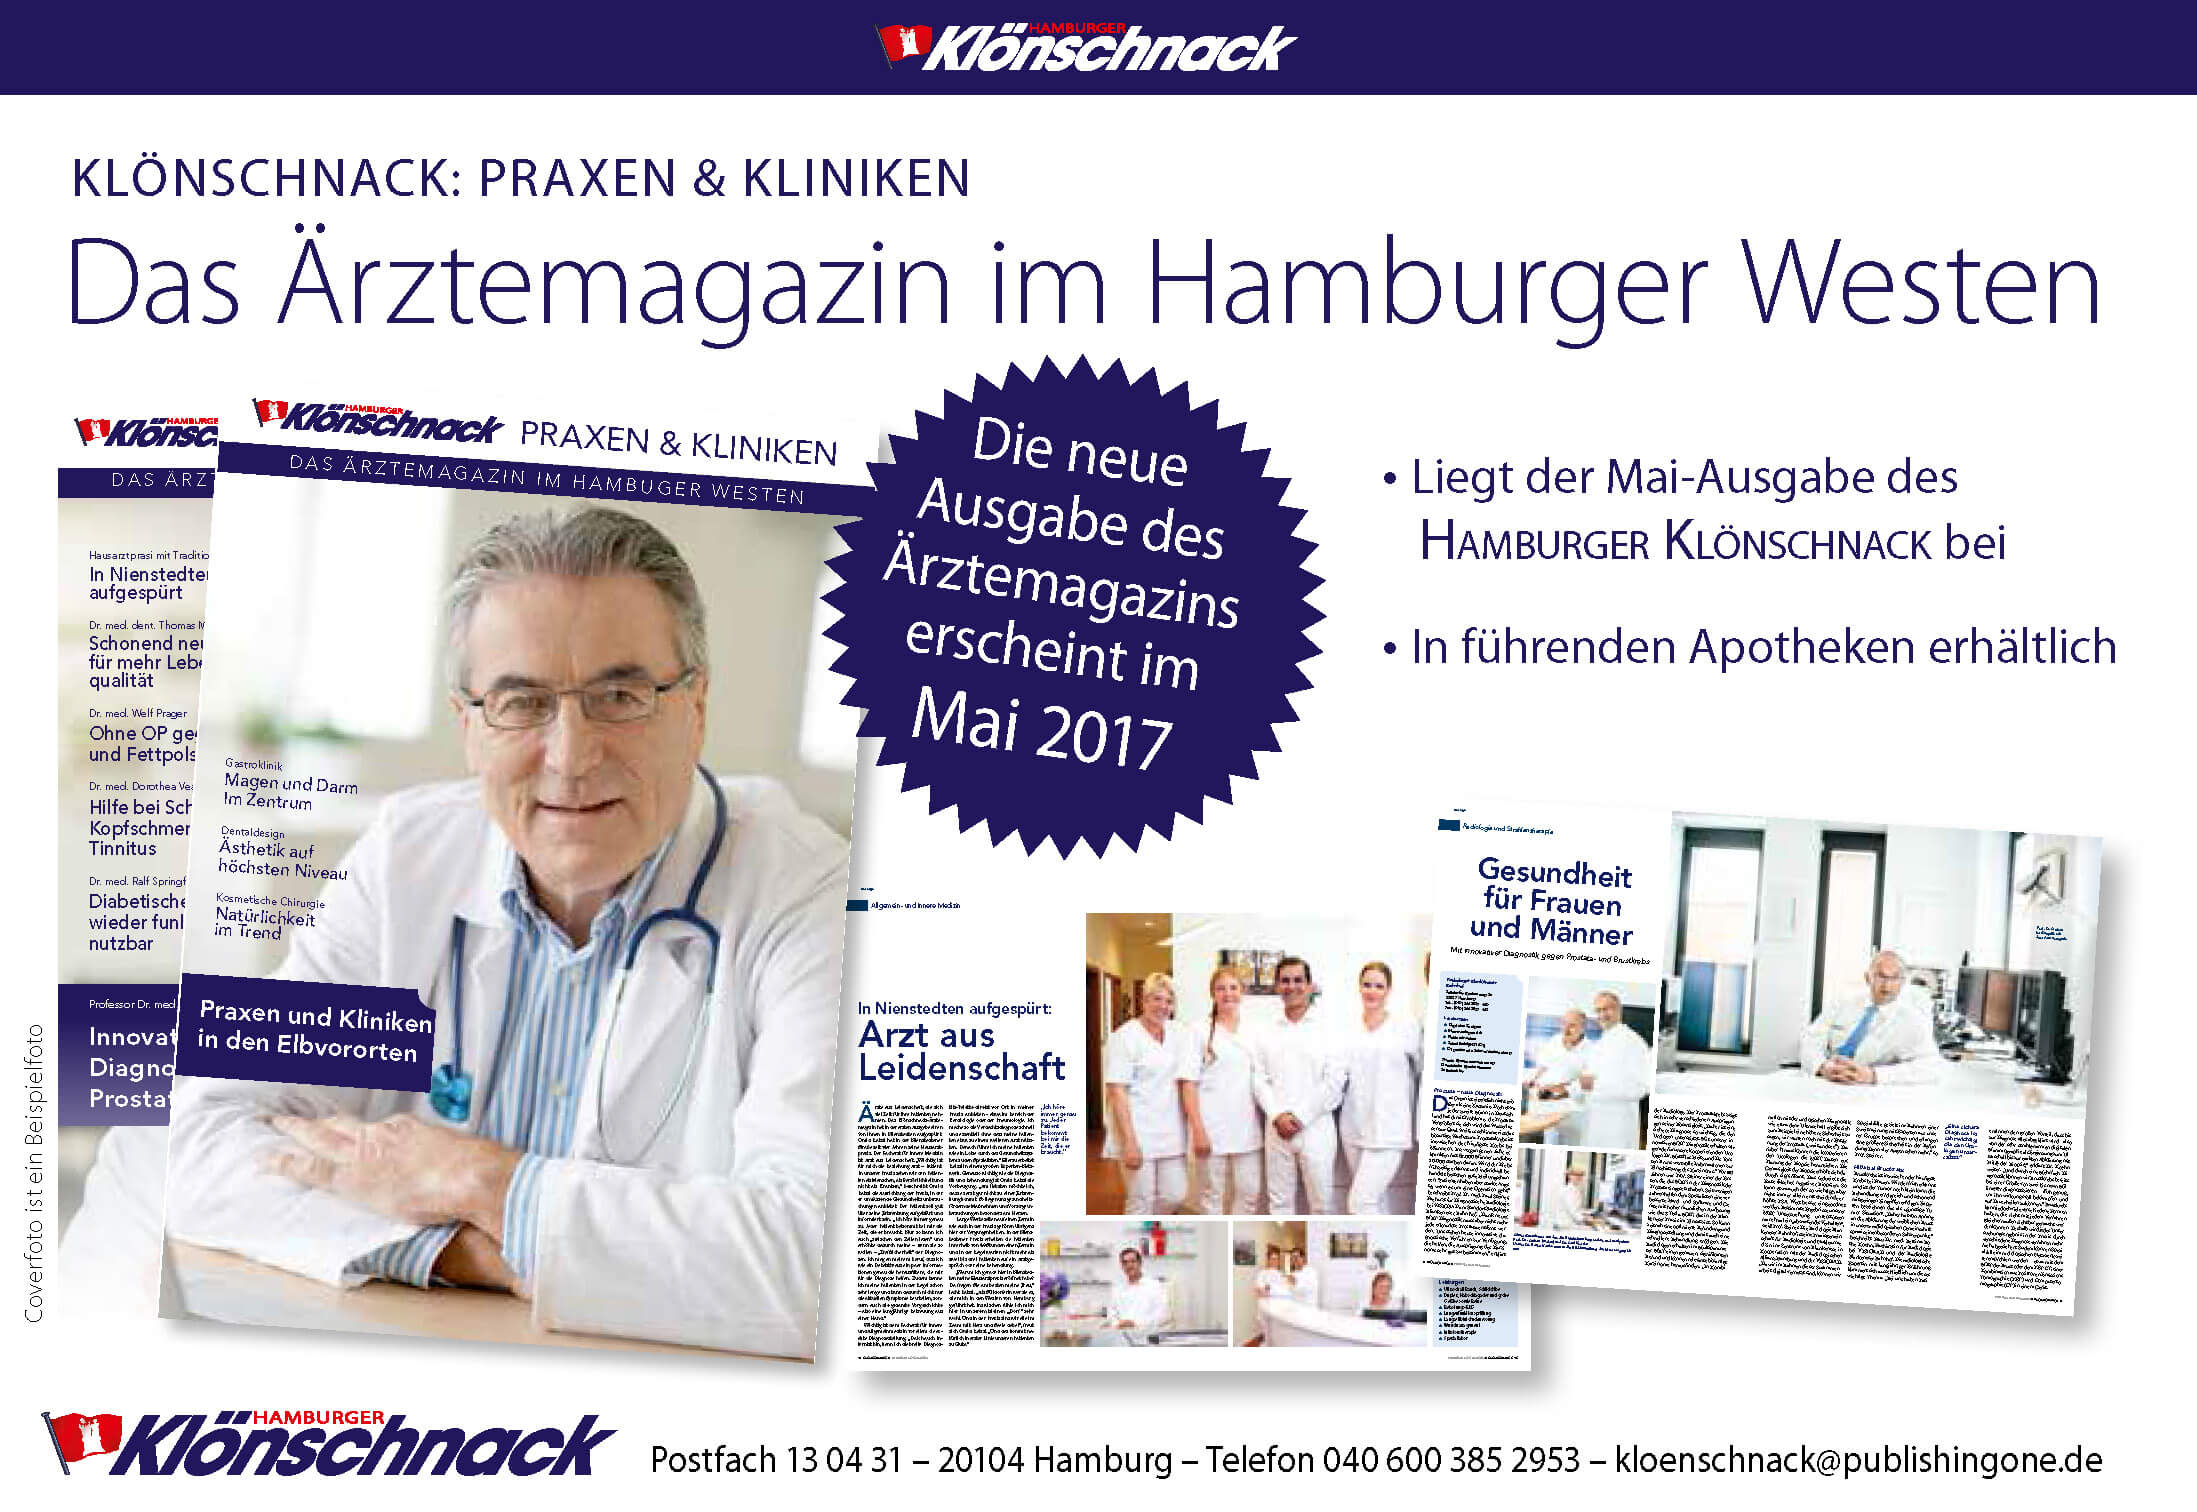 Klönschnack Praxen & Kliniken erscheint im Mai 2017